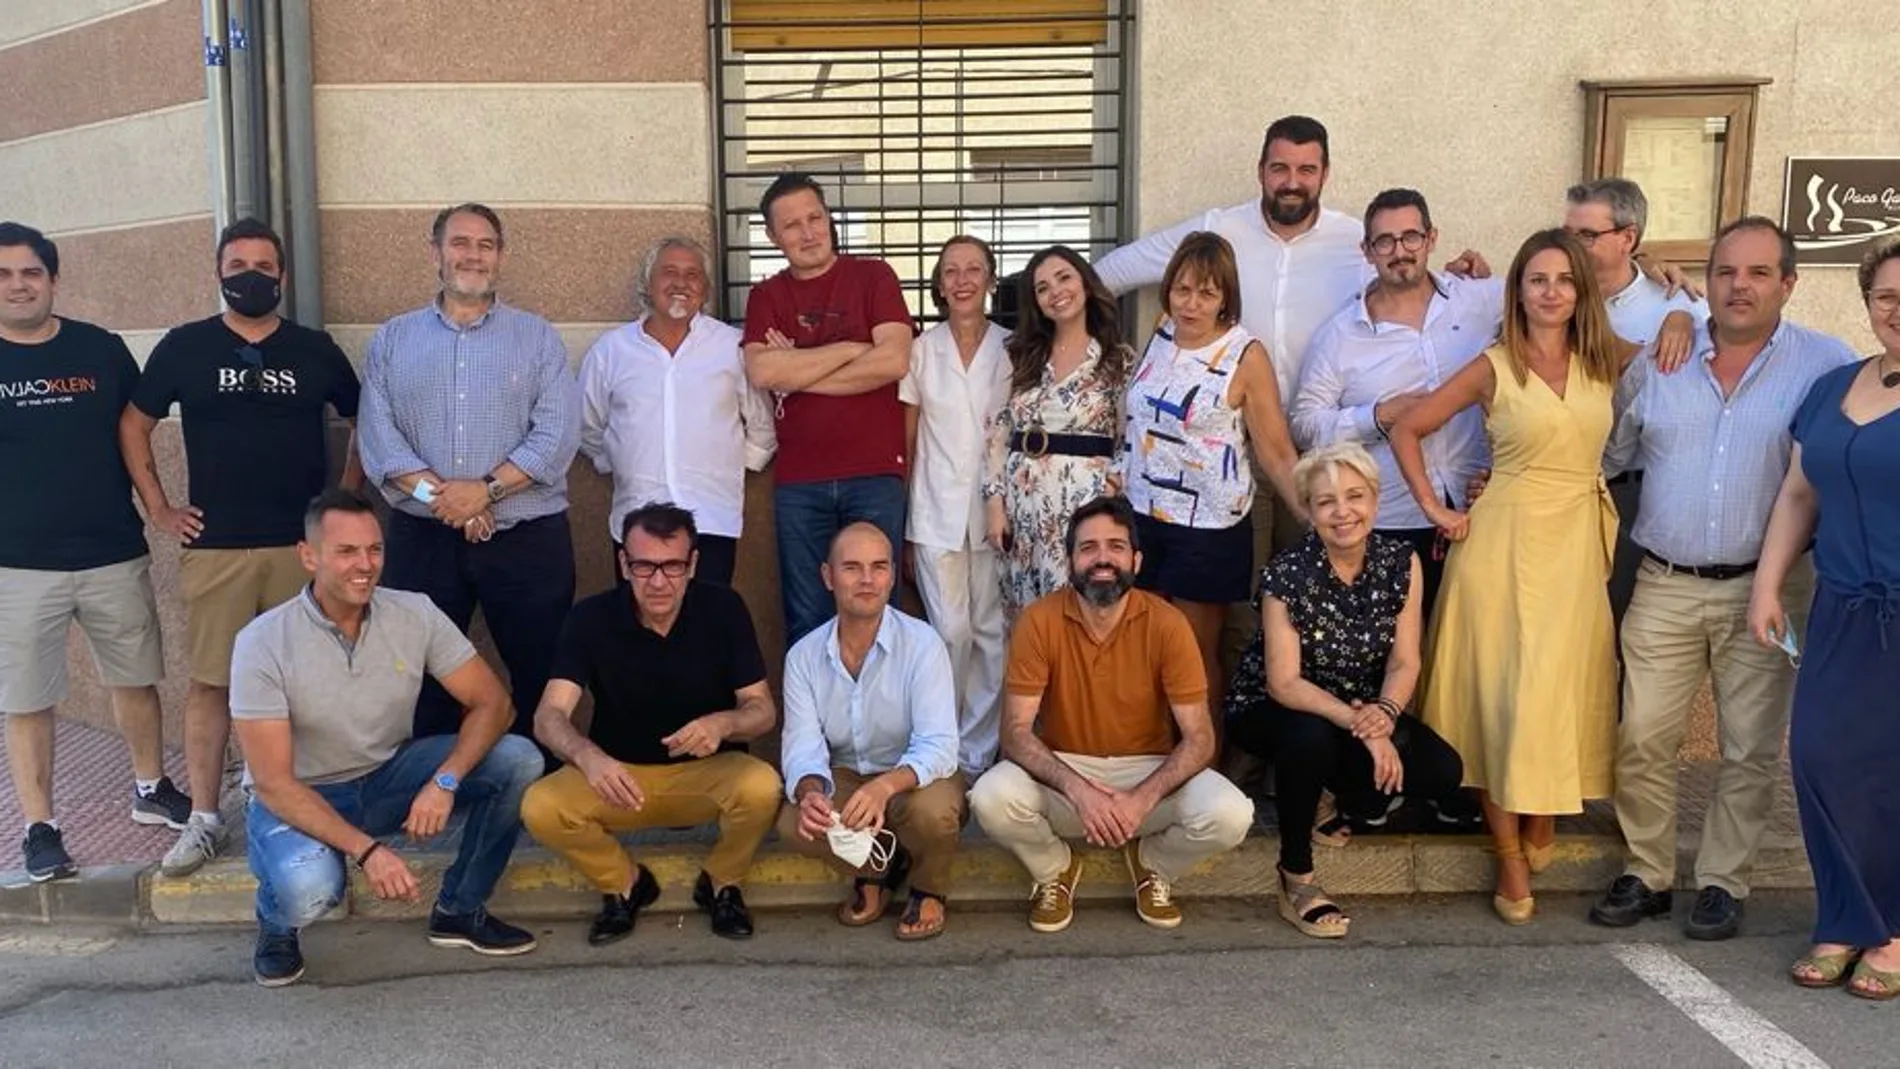 Reunión del Comité de Chefs de Alicante Gastronómica